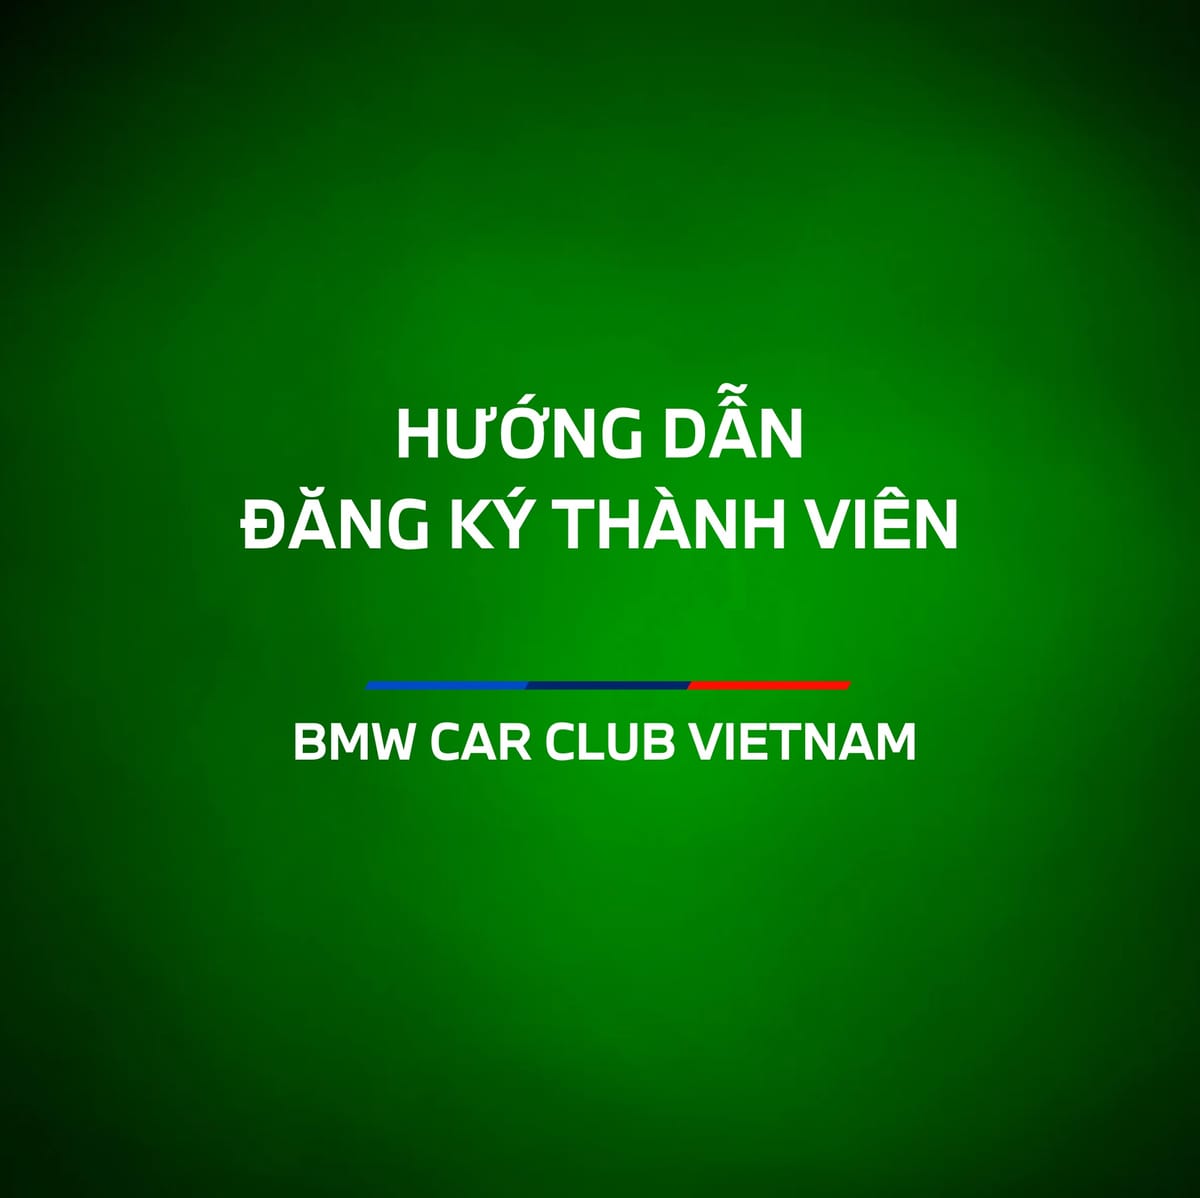 Hướng dẫn đăng kí thành viên của BMW CAR CLUB VIETNAM